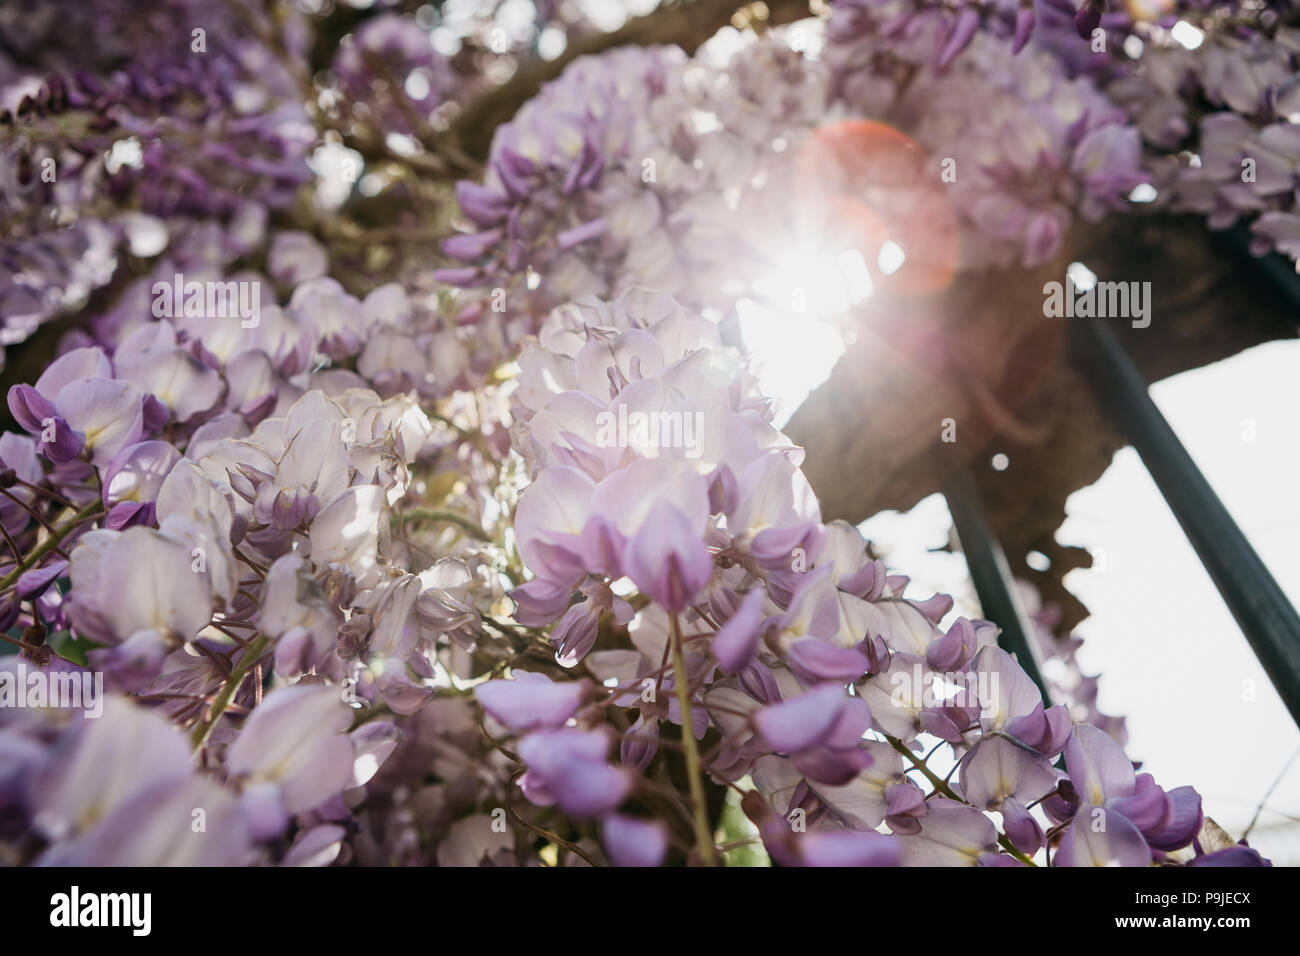 Violett wisteria Blumen wachsen wie ein Zaun Dekoration. Stockfoto